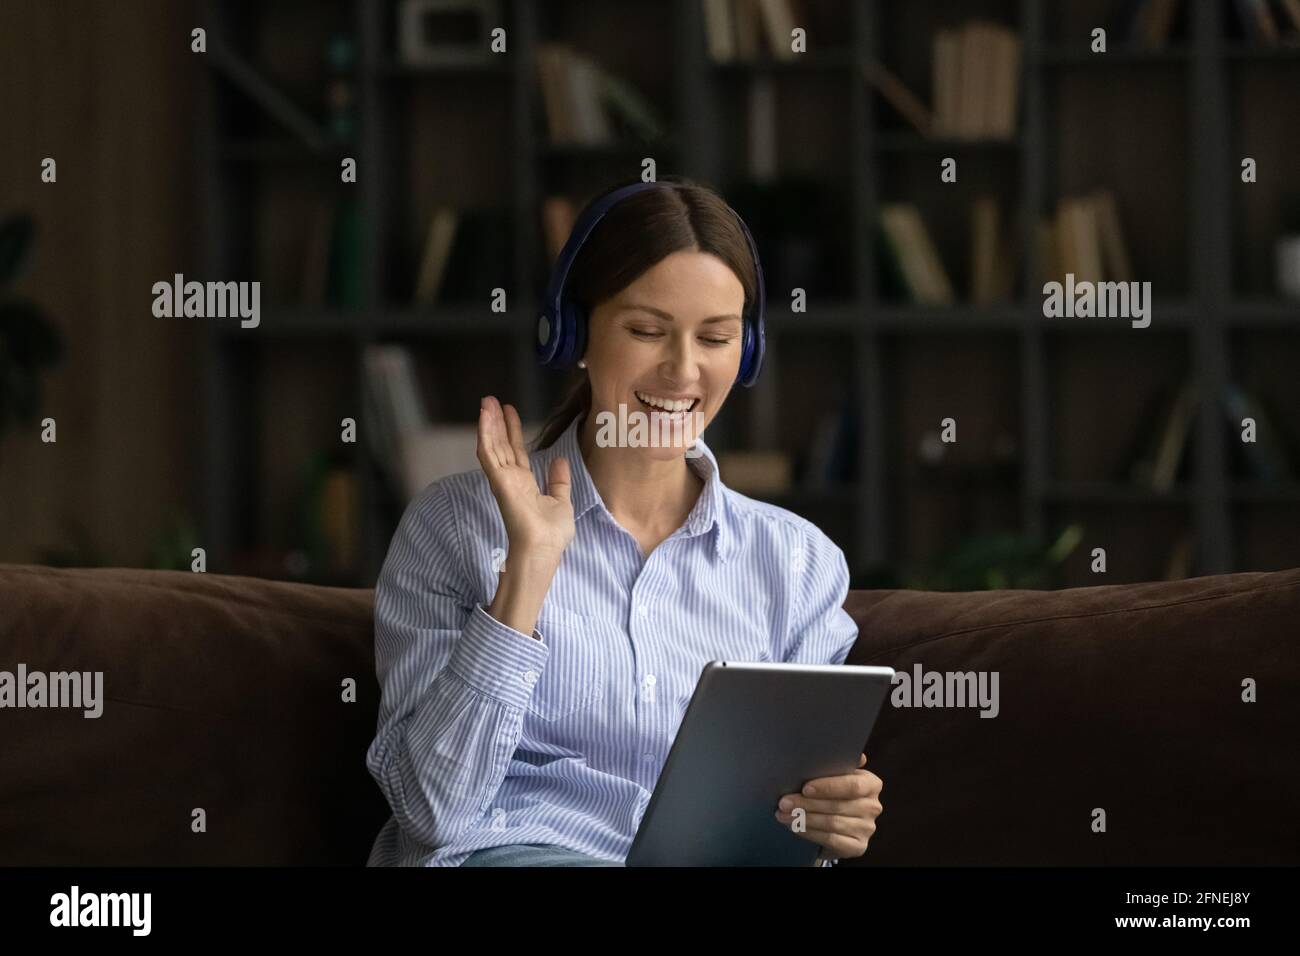 Junge Frau im Headset, die mit einem digitalen Tablet Videoclips macht Stockfoto